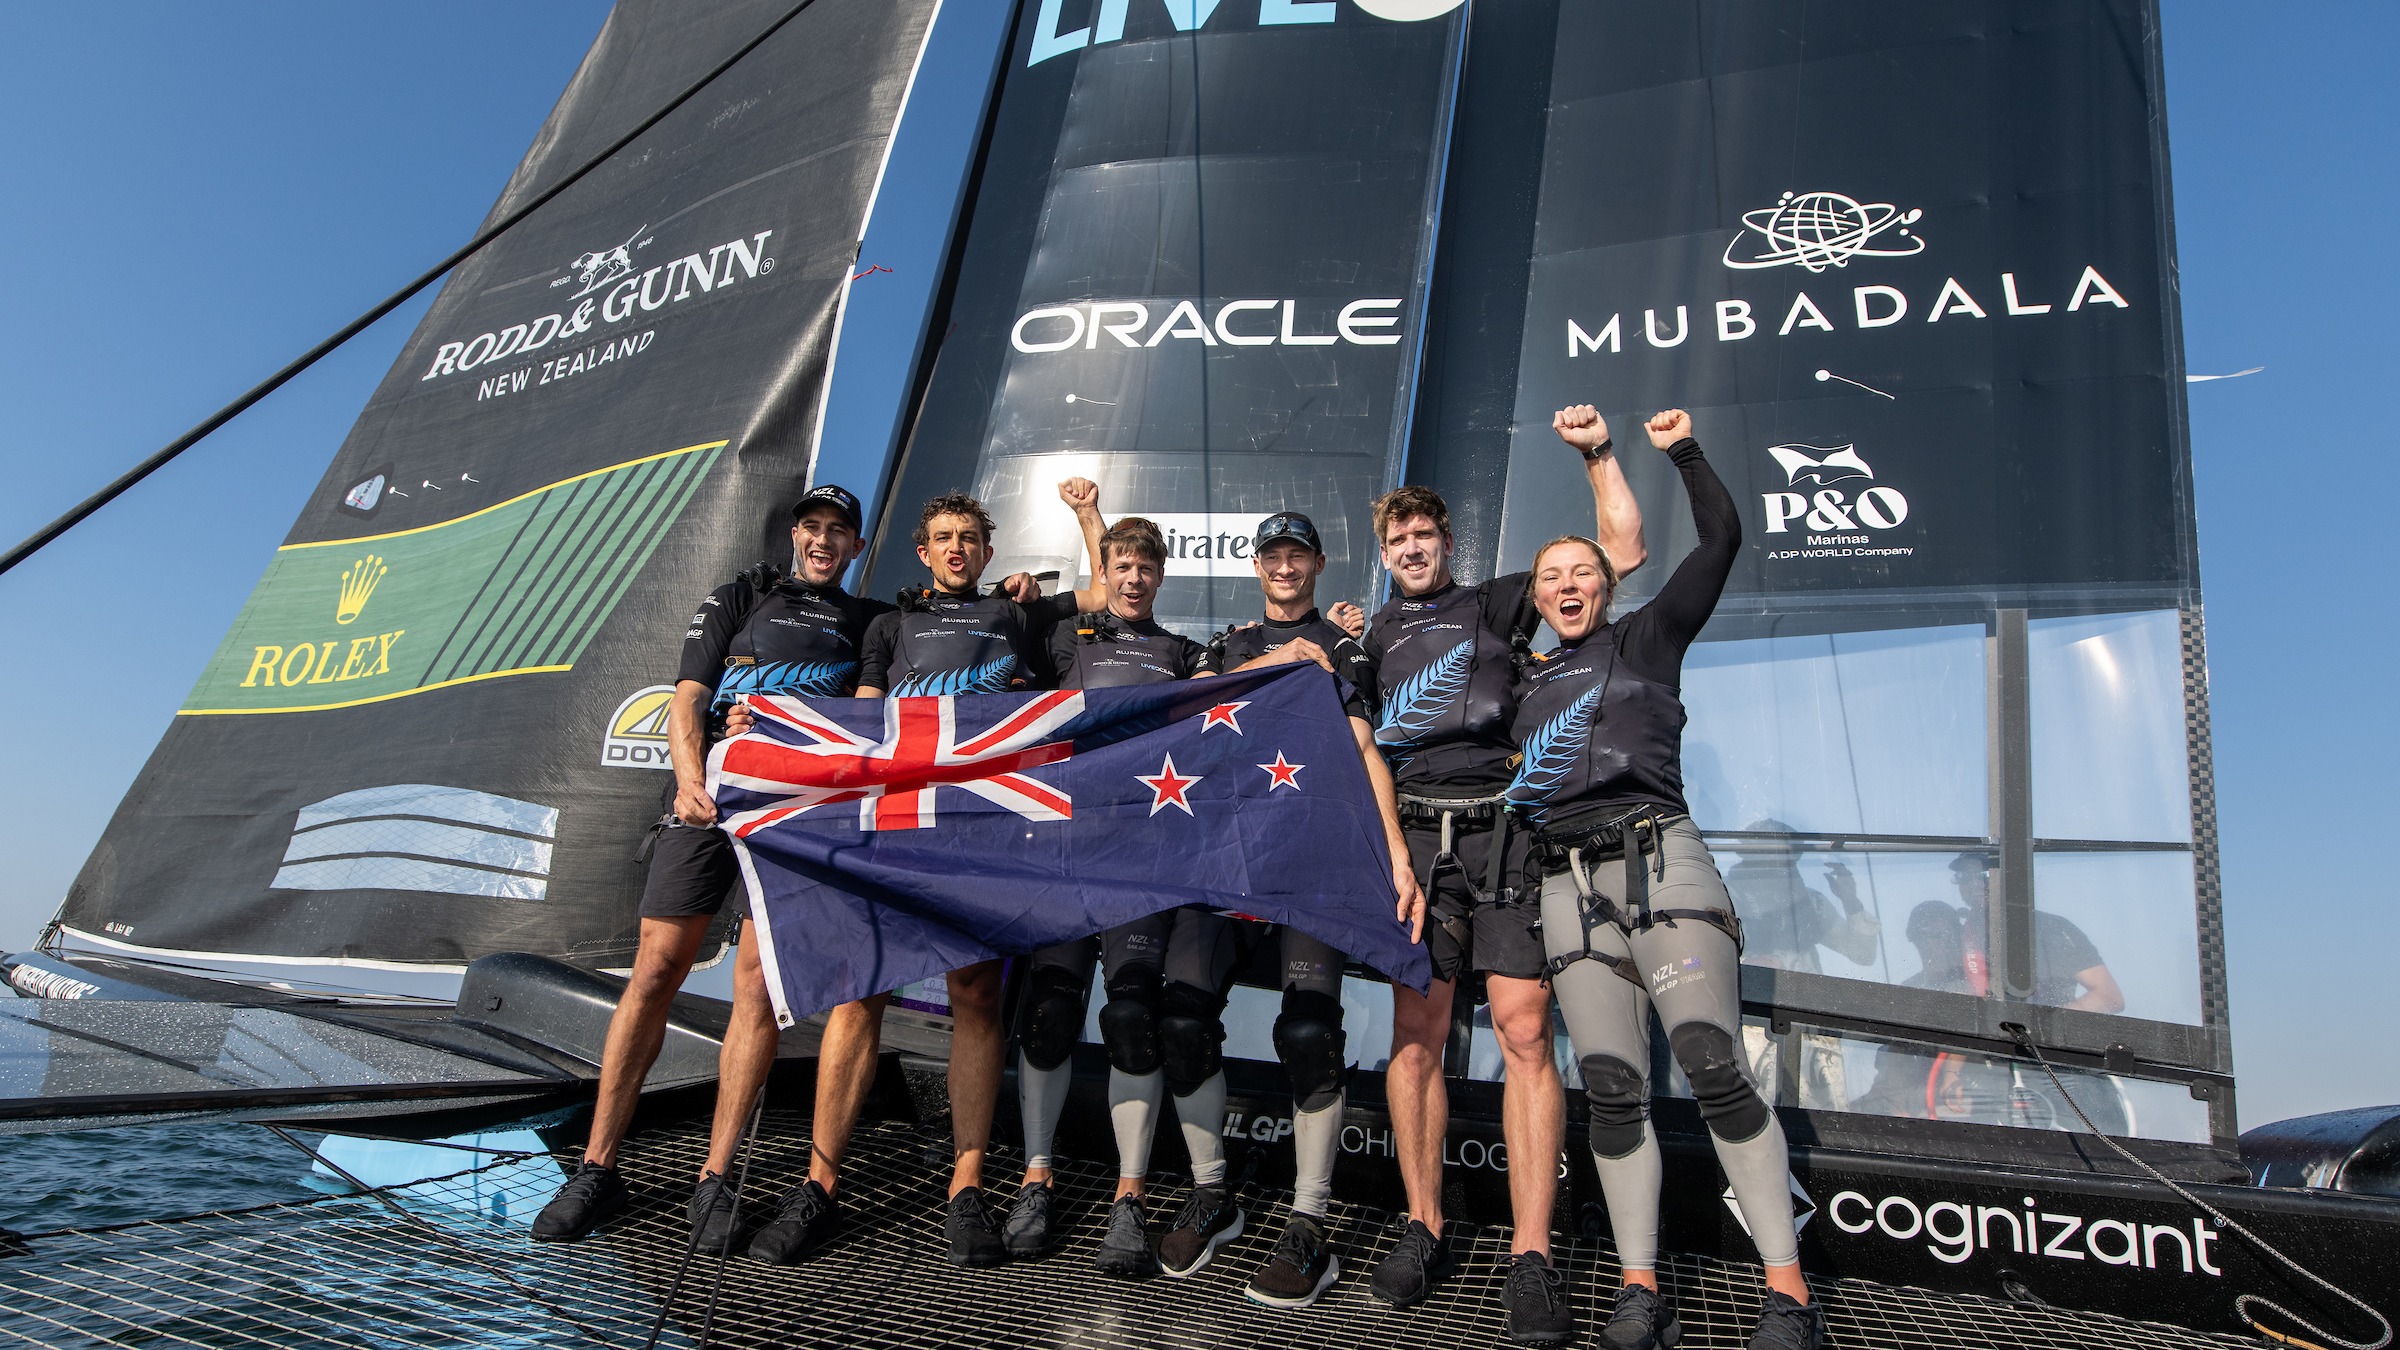 Season 4 // New Zealand celebrate on F50 after winning Dubai Sail Grand Prix 